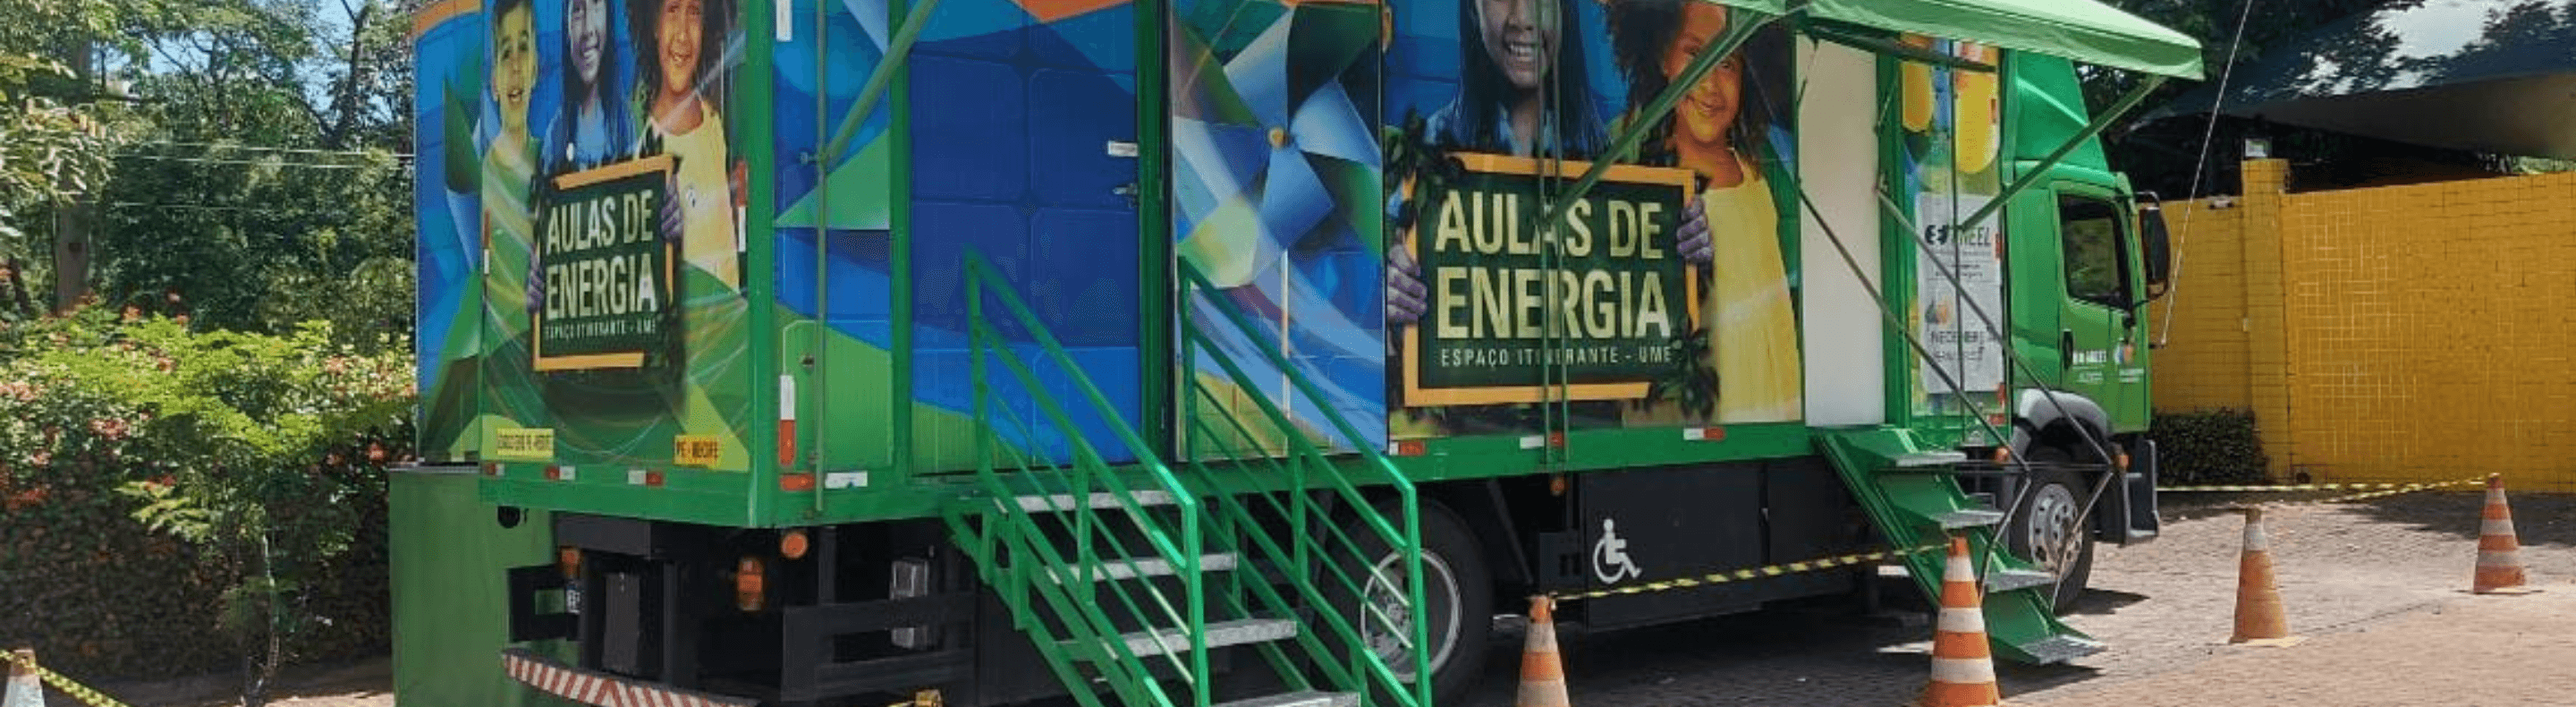 Caminhão do Projeto Aulas de Energia da Neoenergia estacionado